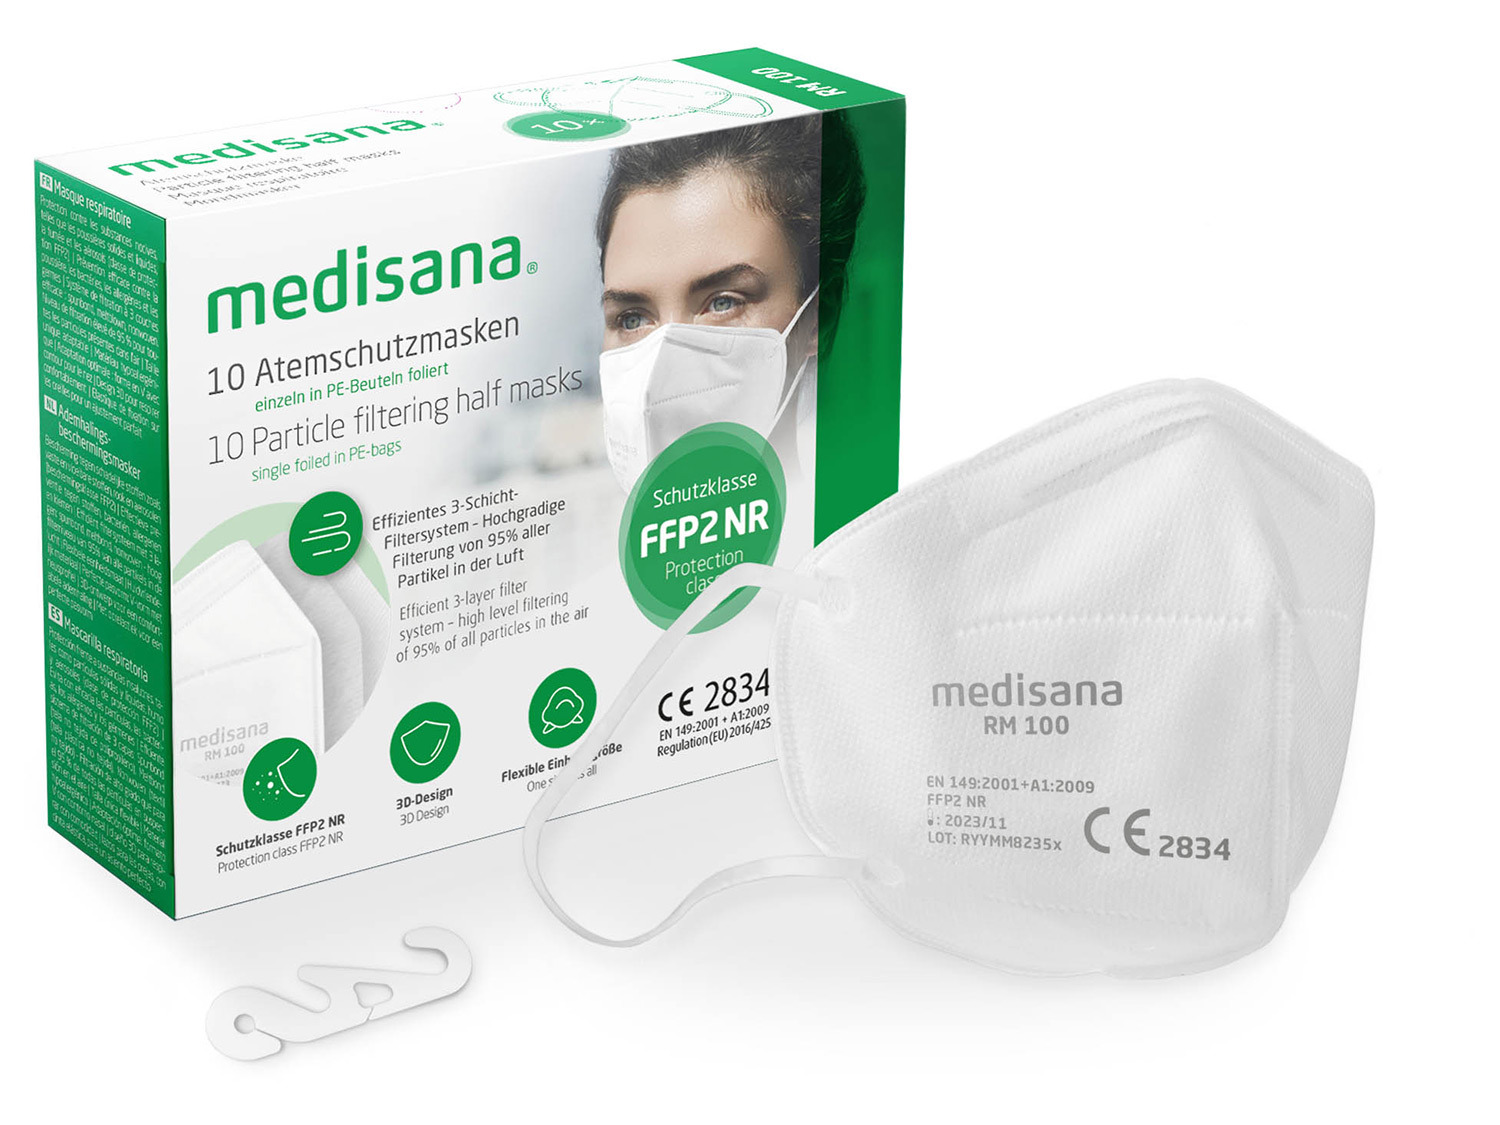 MEDISANA RM 10pcs/set Atemschutzmasken | LIDL FFP2 100